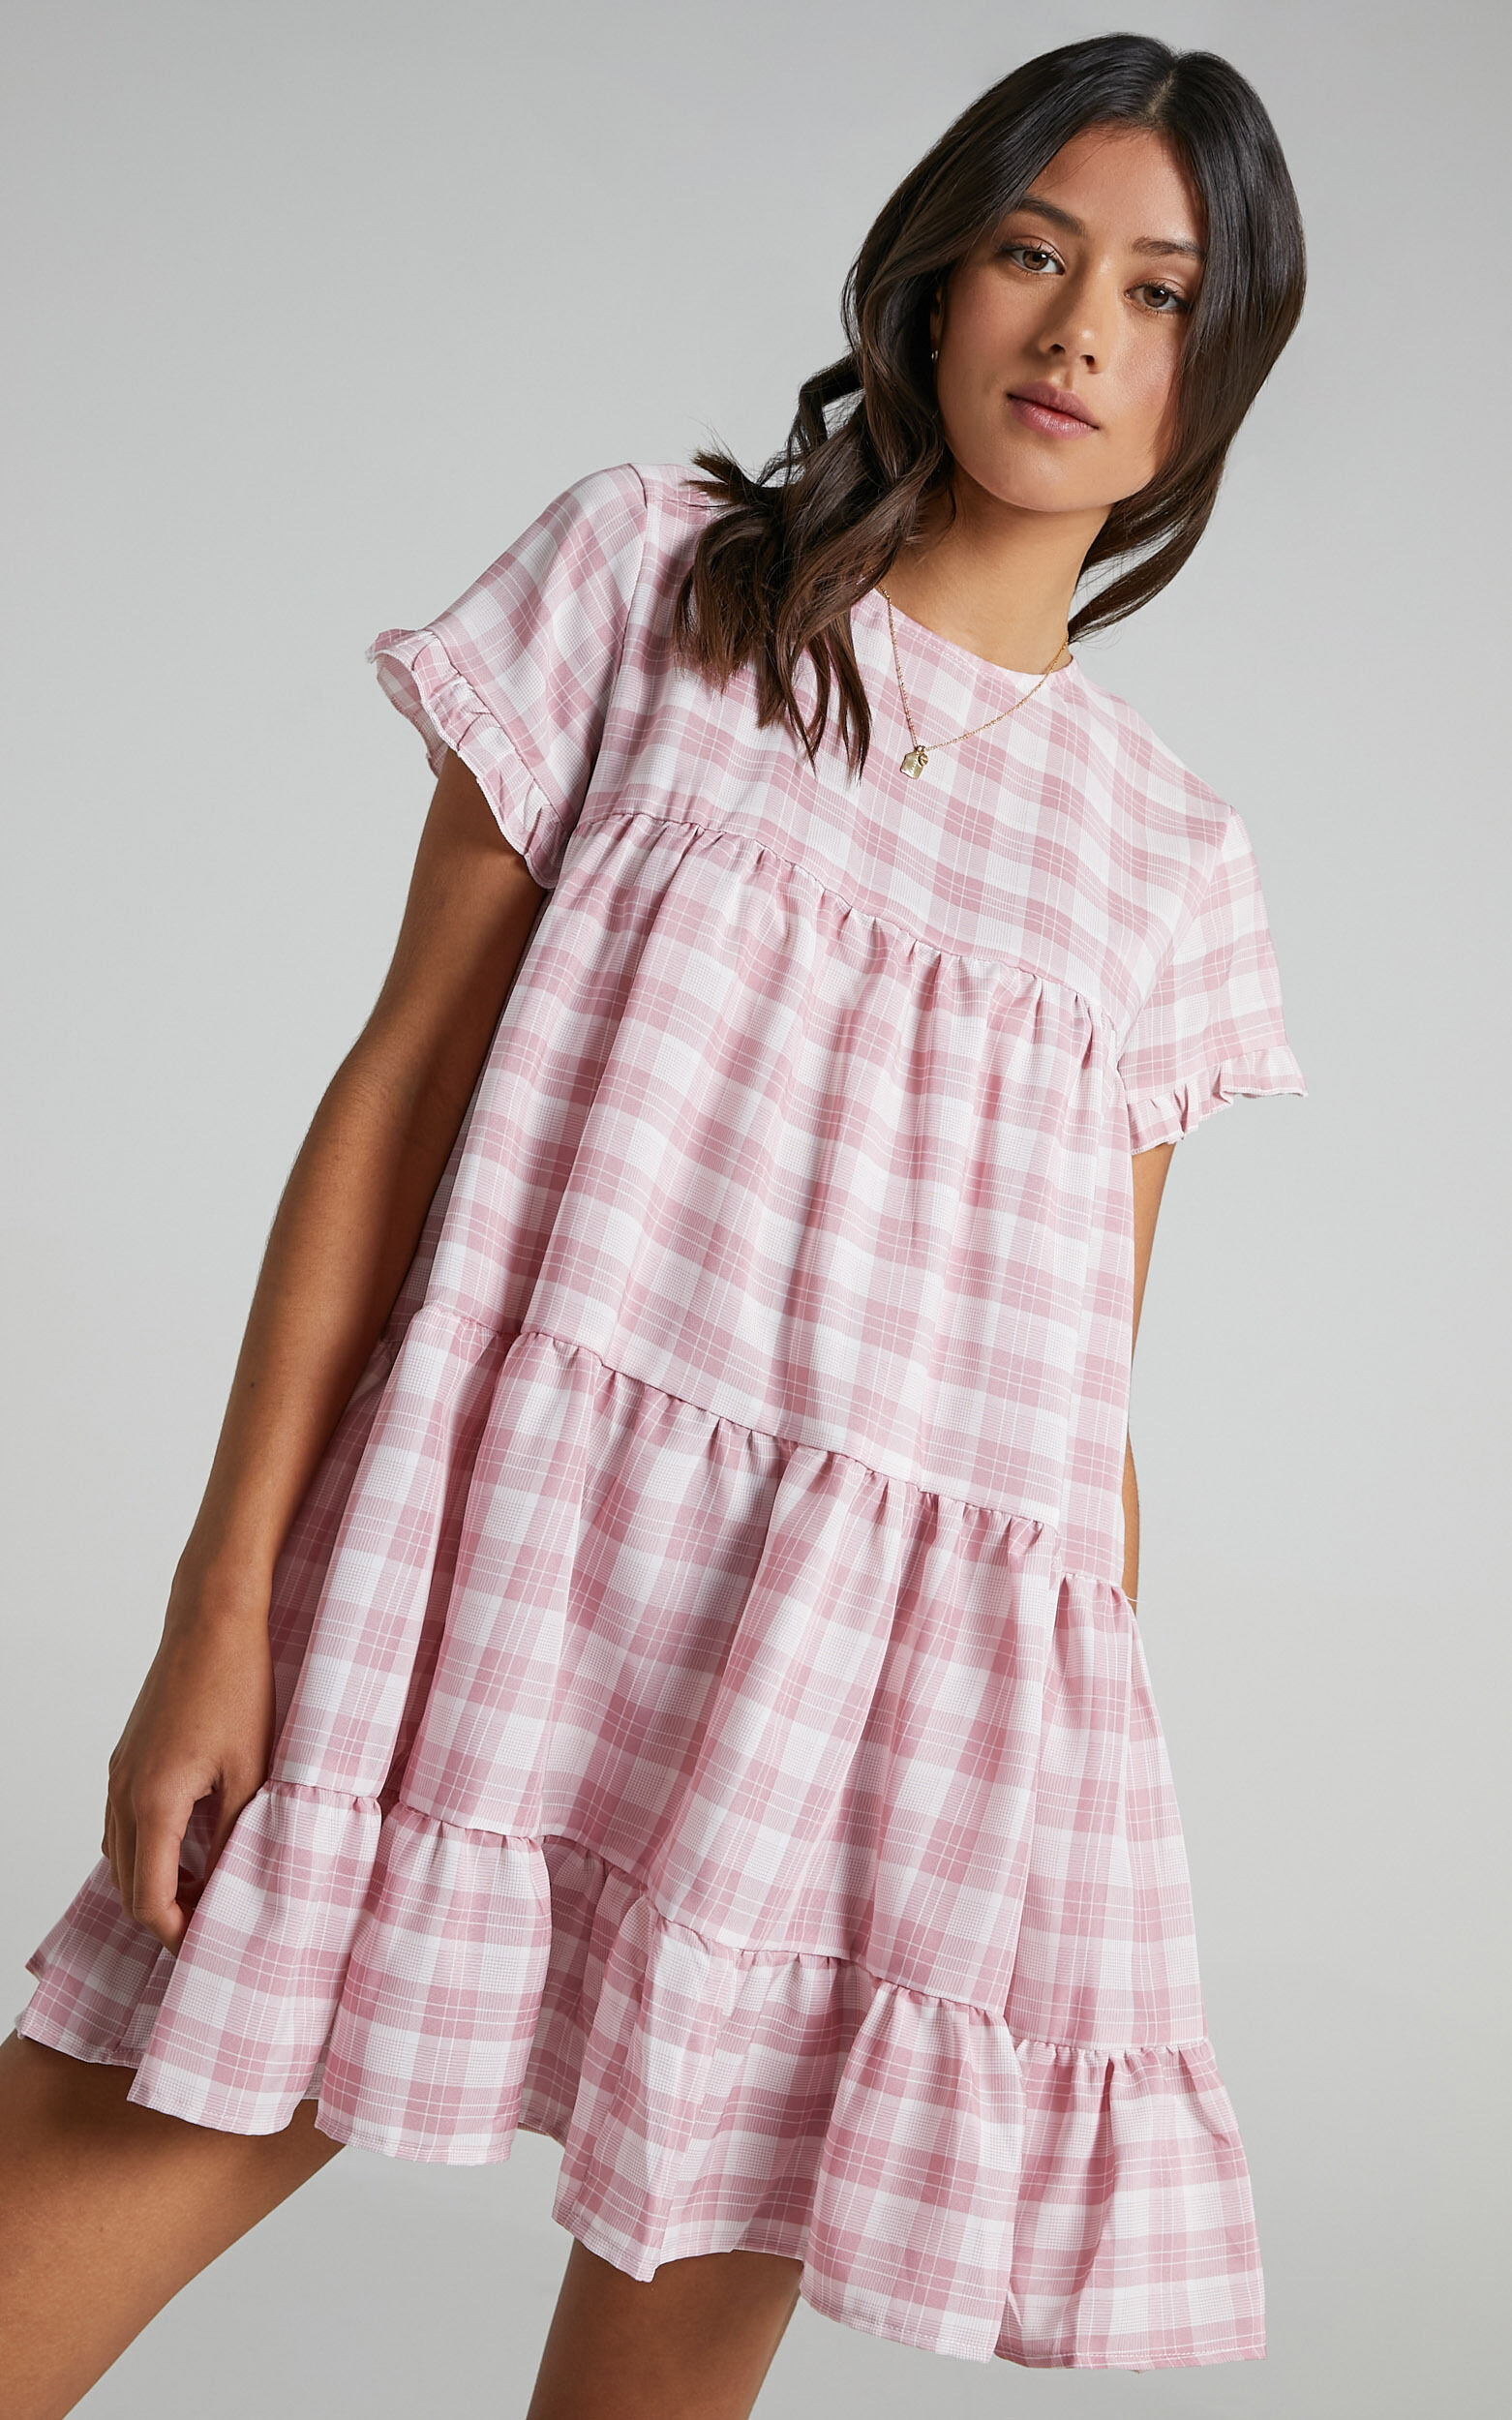 Elise Dress in Pink Check - 14 (XL), Pink, super-hi-res image number null